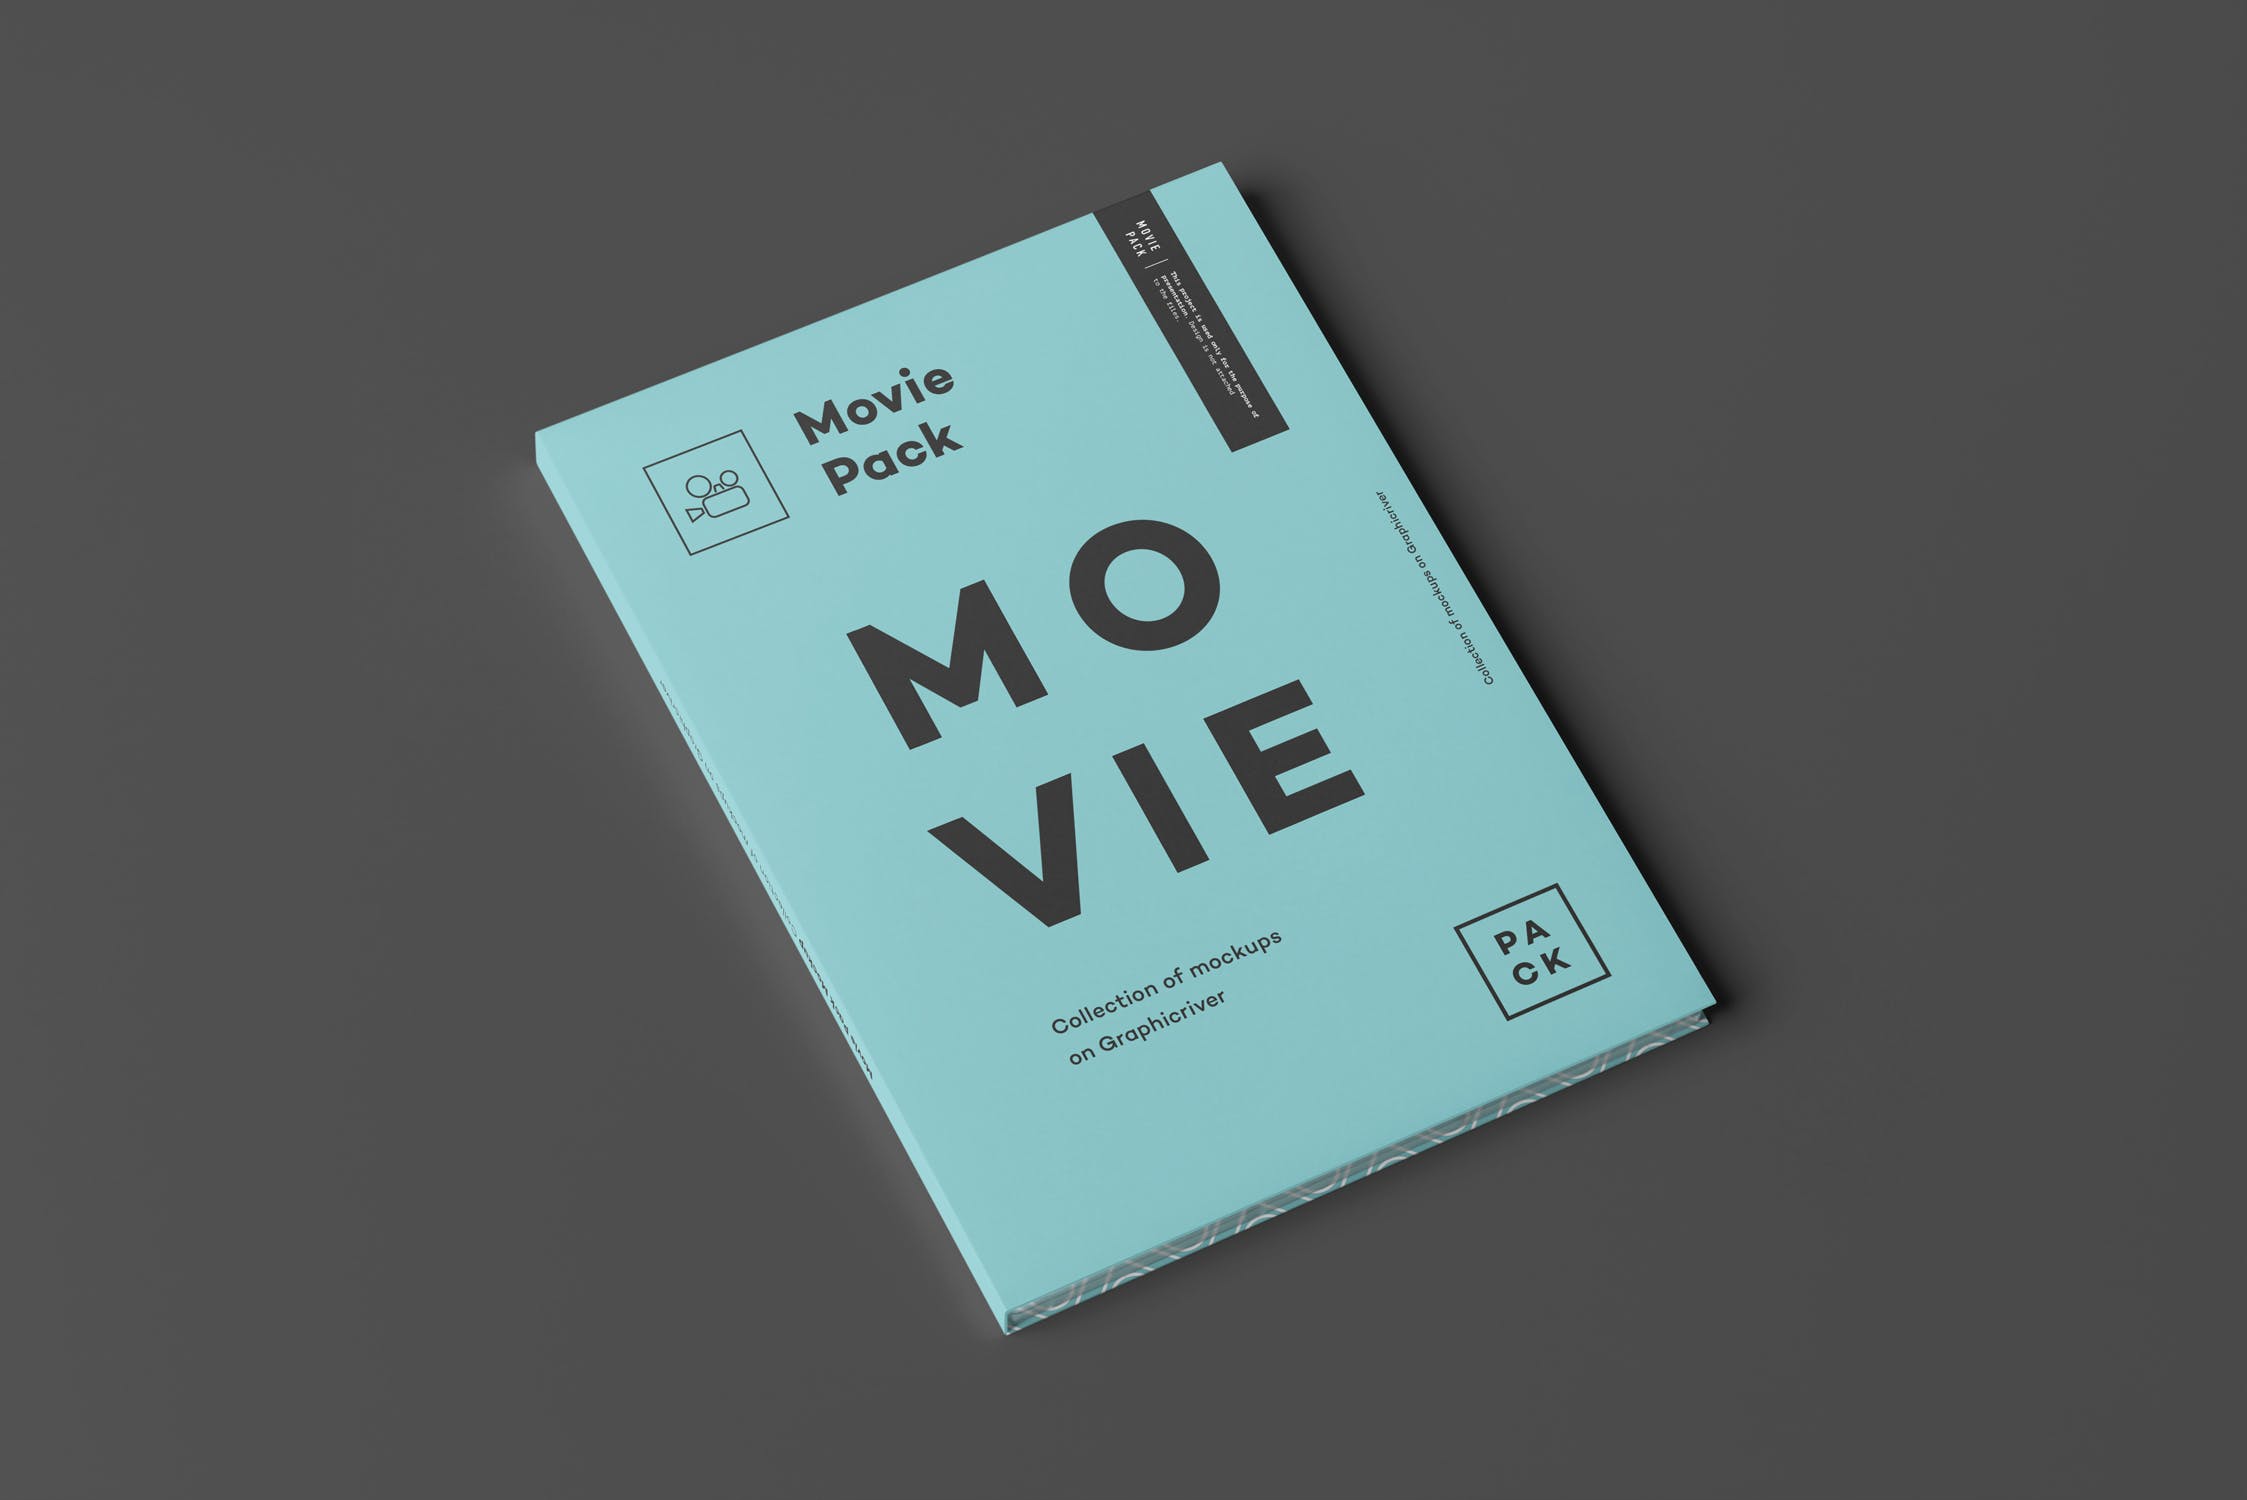 电影DVD包装盒外观设计样机3 Movie Pack Mock-up 3插图(9)